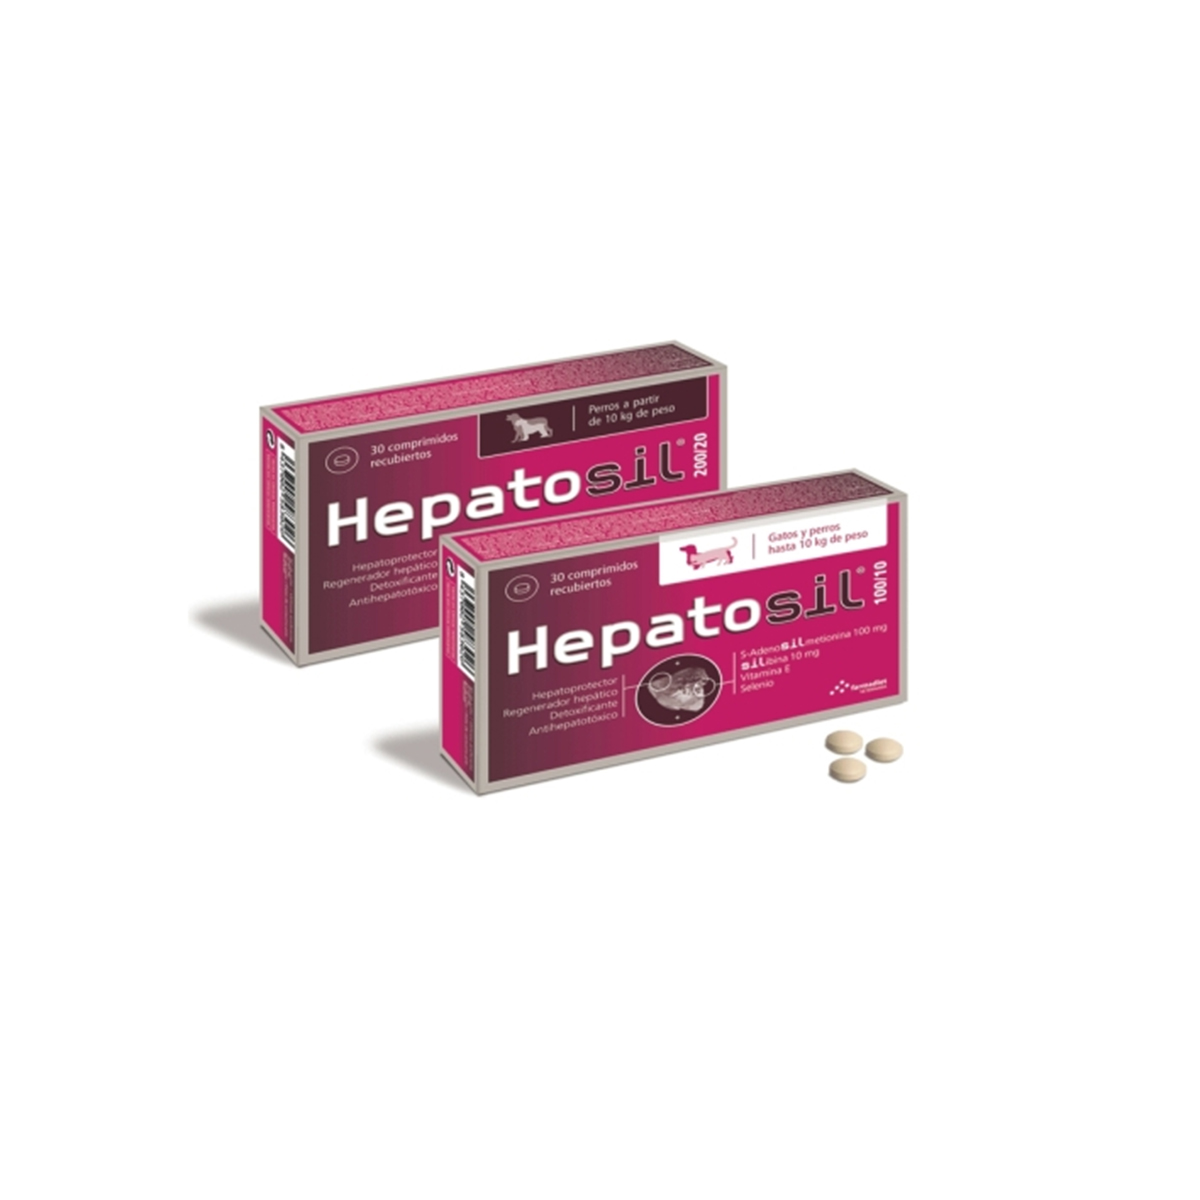 Hepatosil 200/20 x 30 tablete petmart